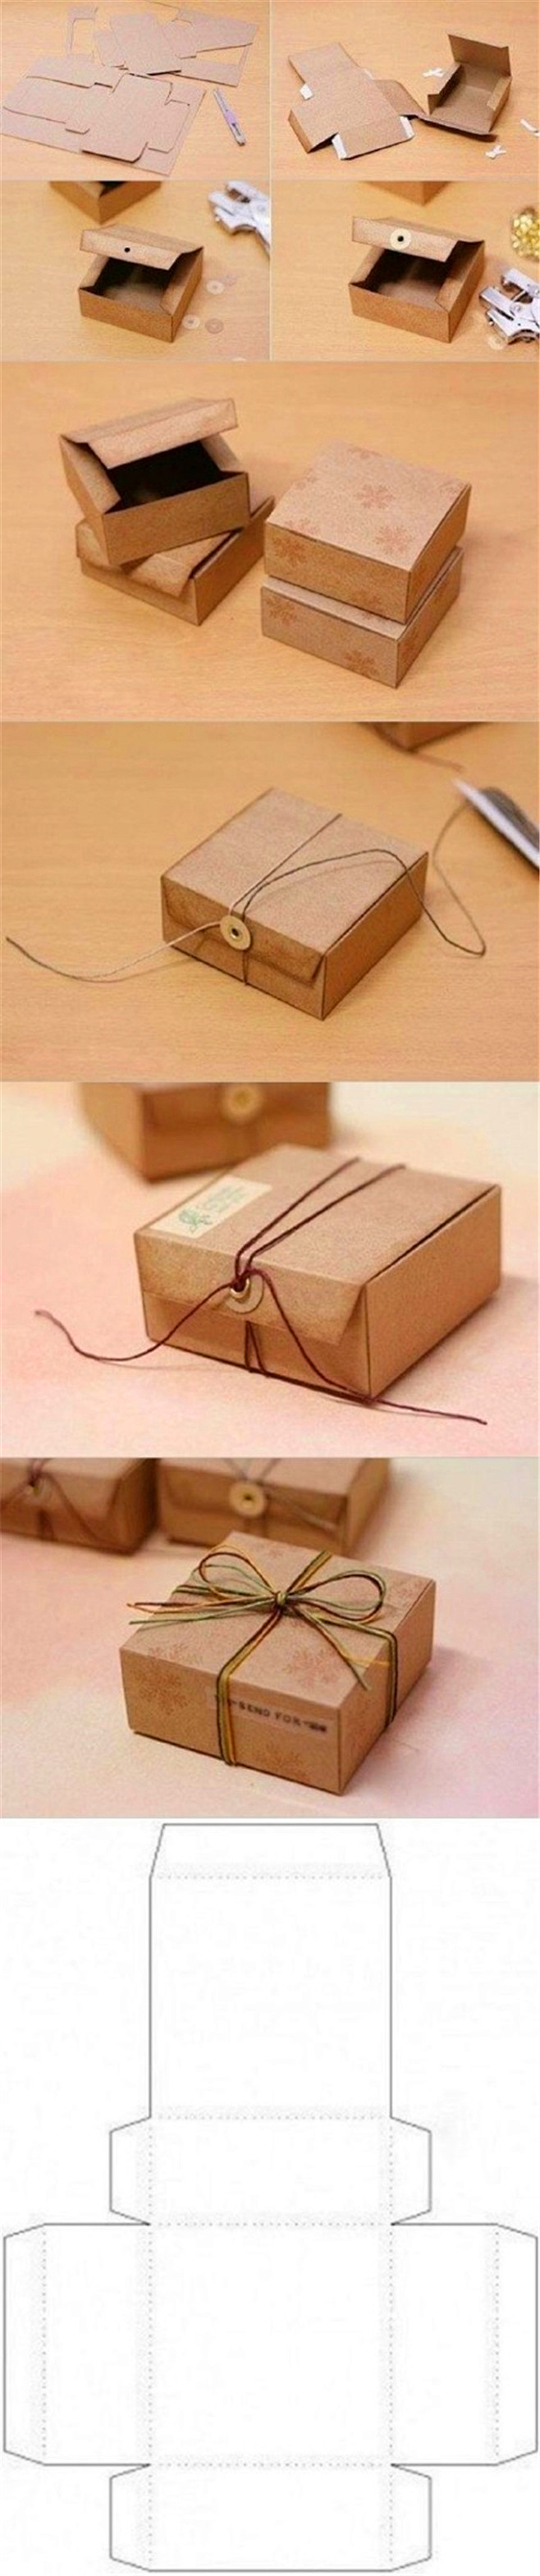 自制创意礼物包装盒 礼品包装方法教程
#...